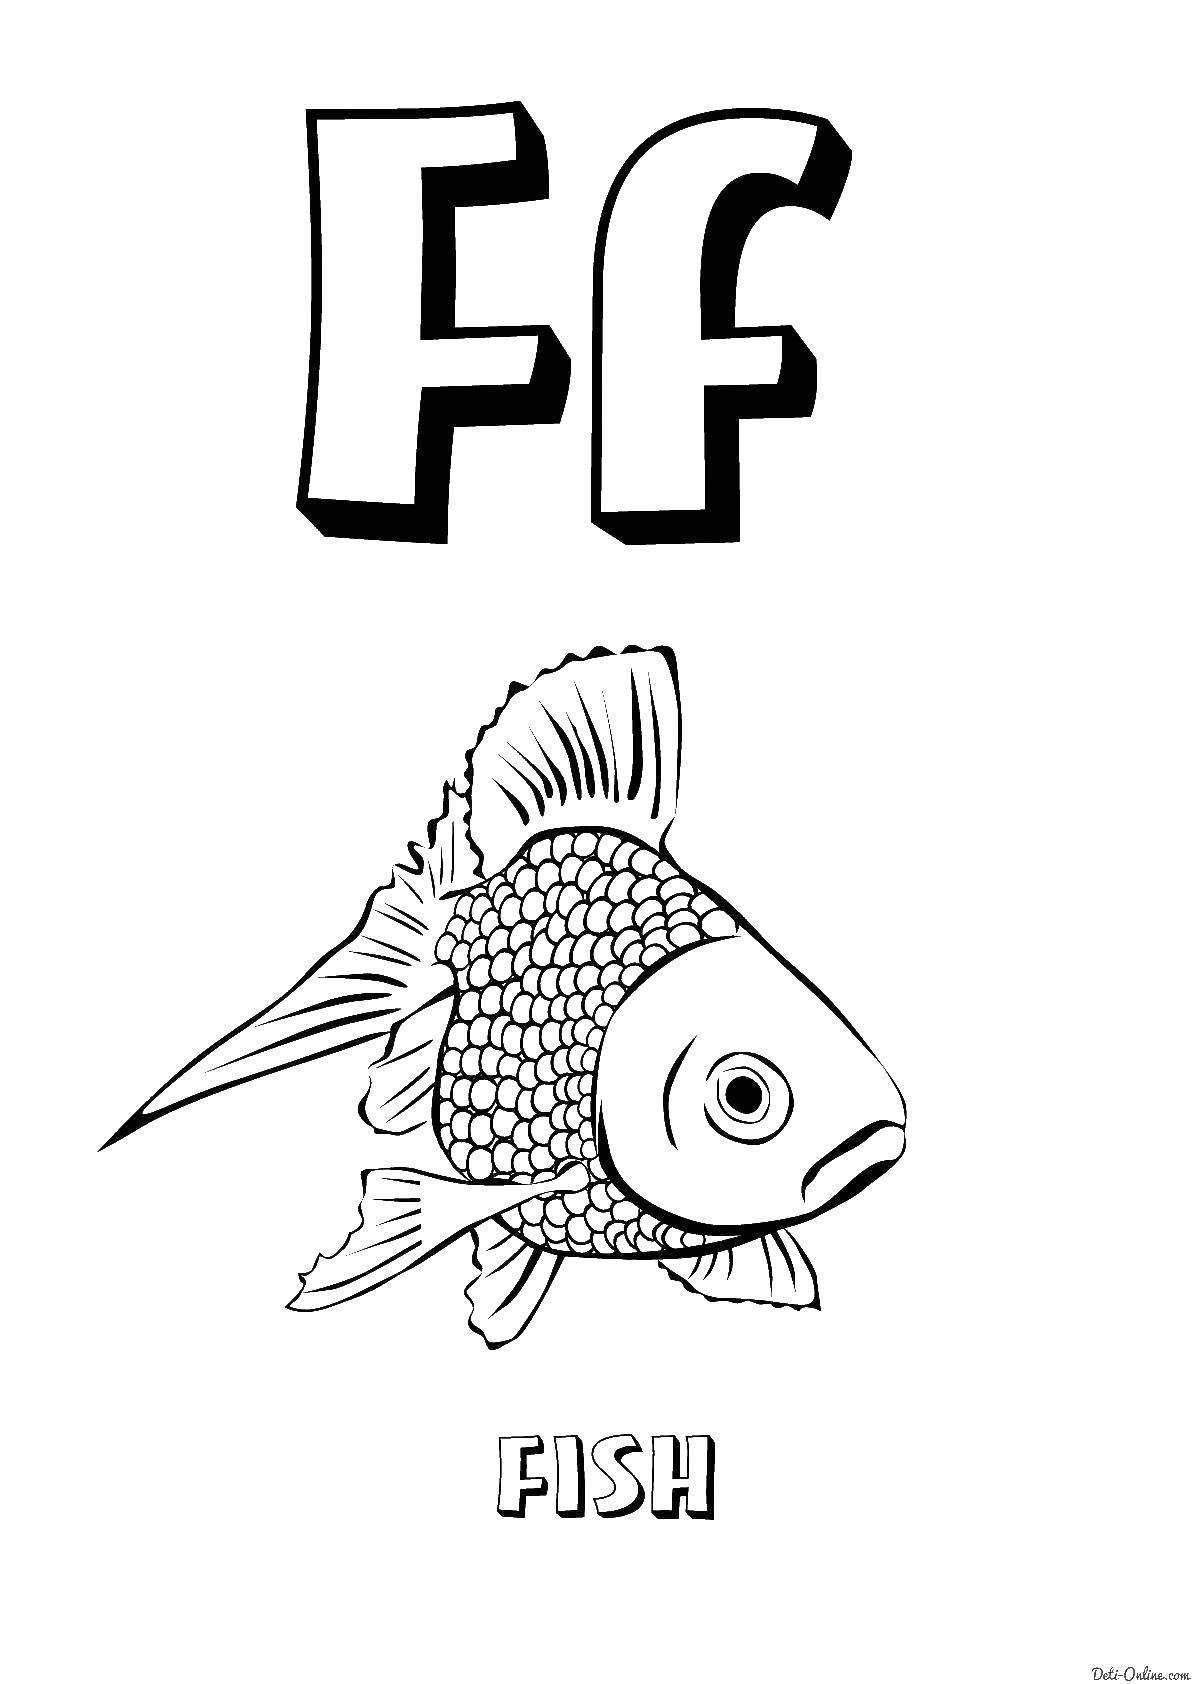 Название: Раскраска Letter f. Категория: Английский. Теги: letter F, fish.